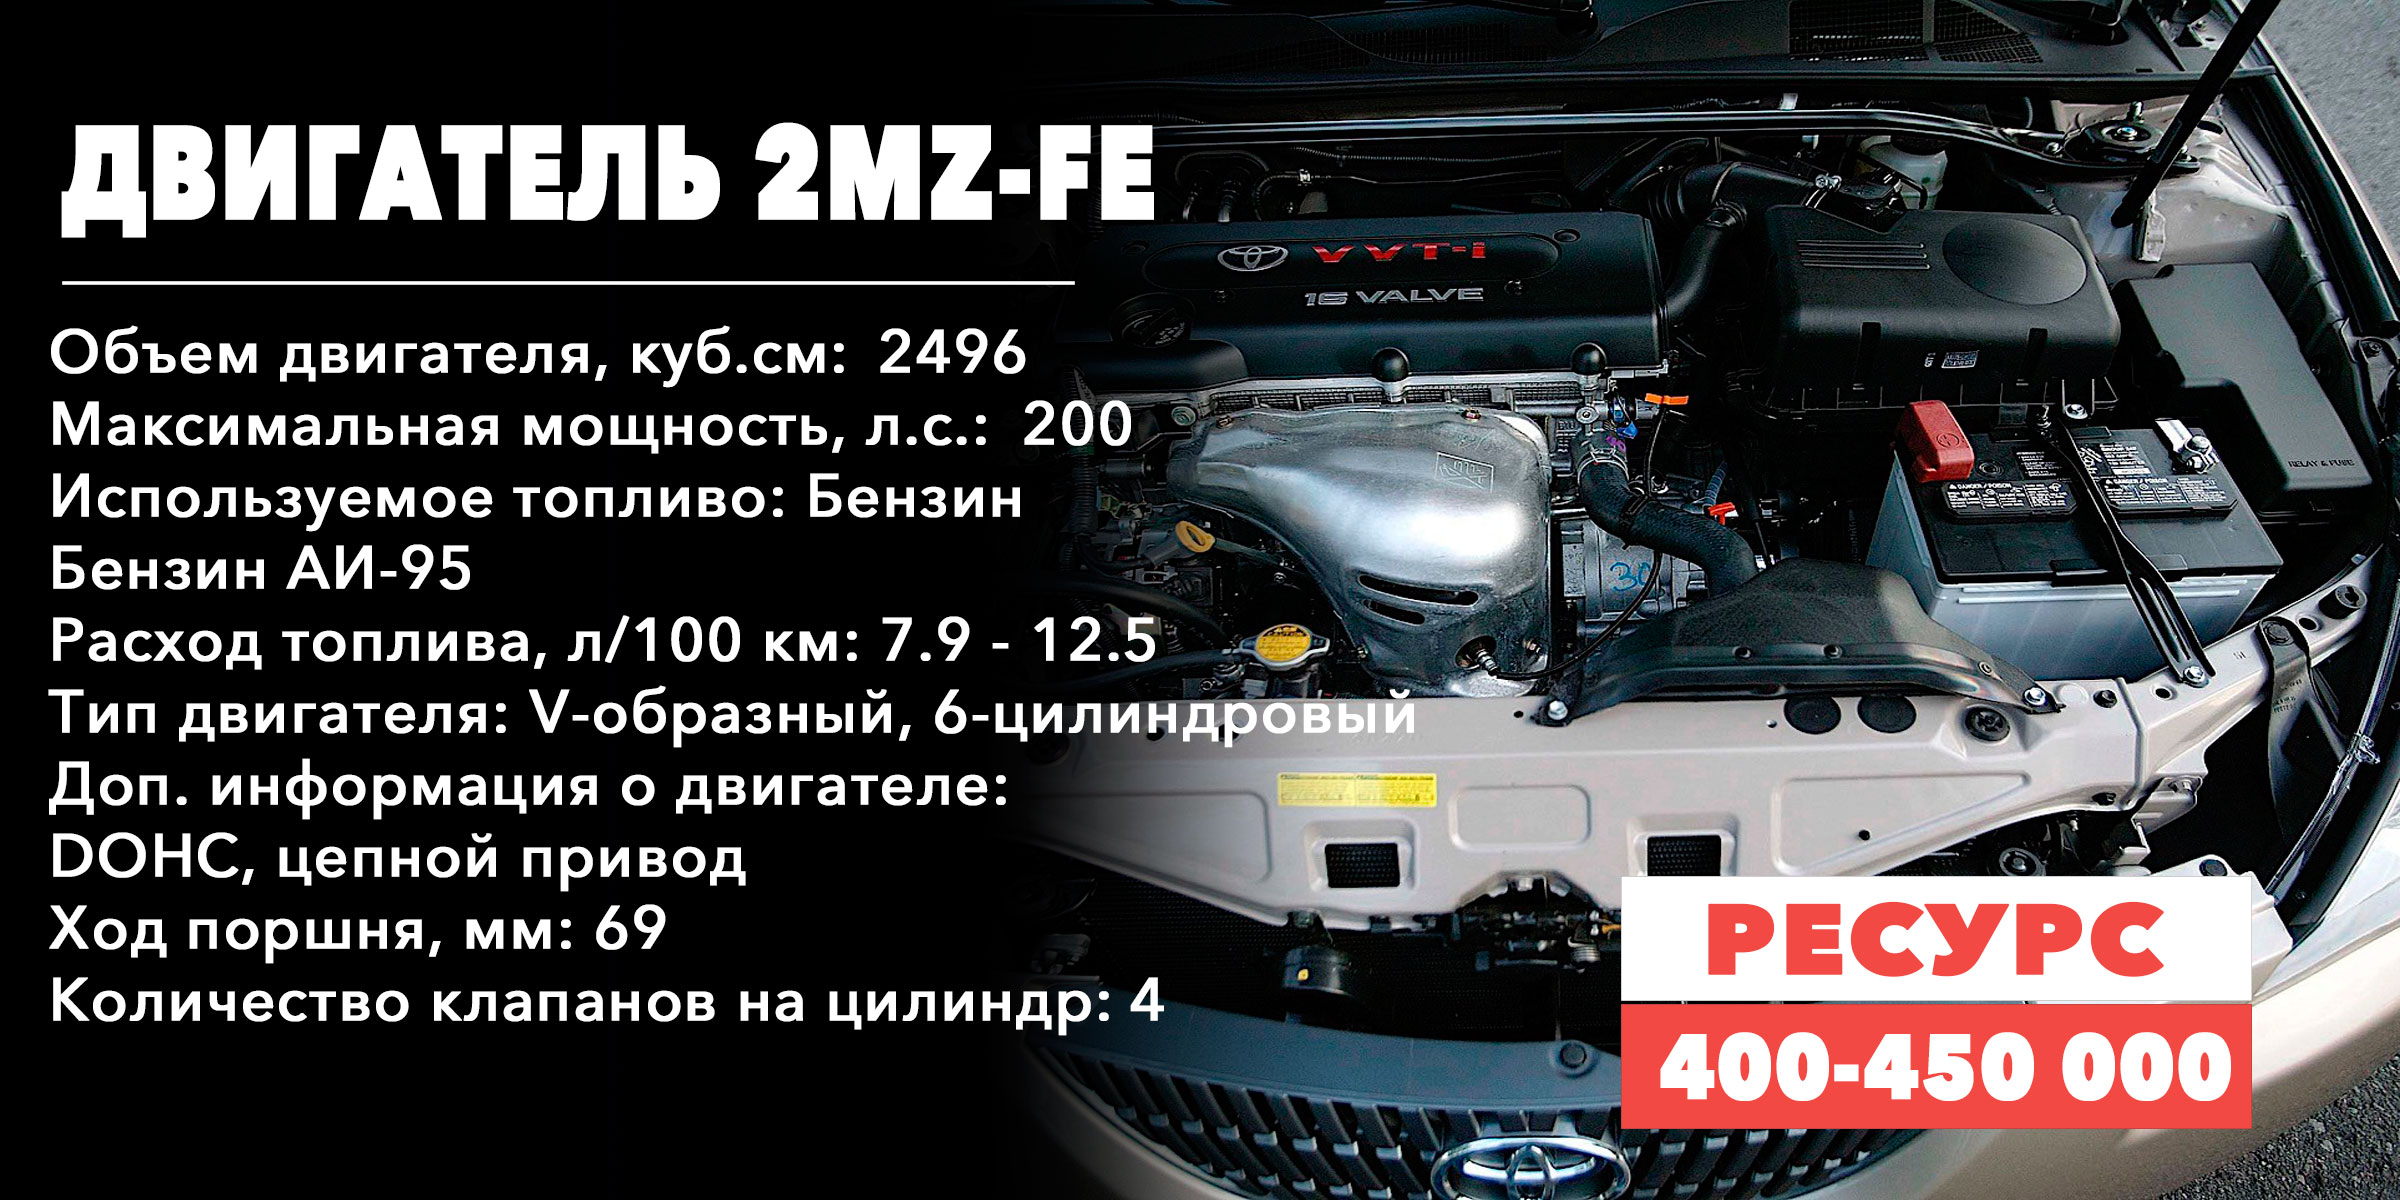 Ресурс двигателя семейства MZ-(2MZ-FE) Камри